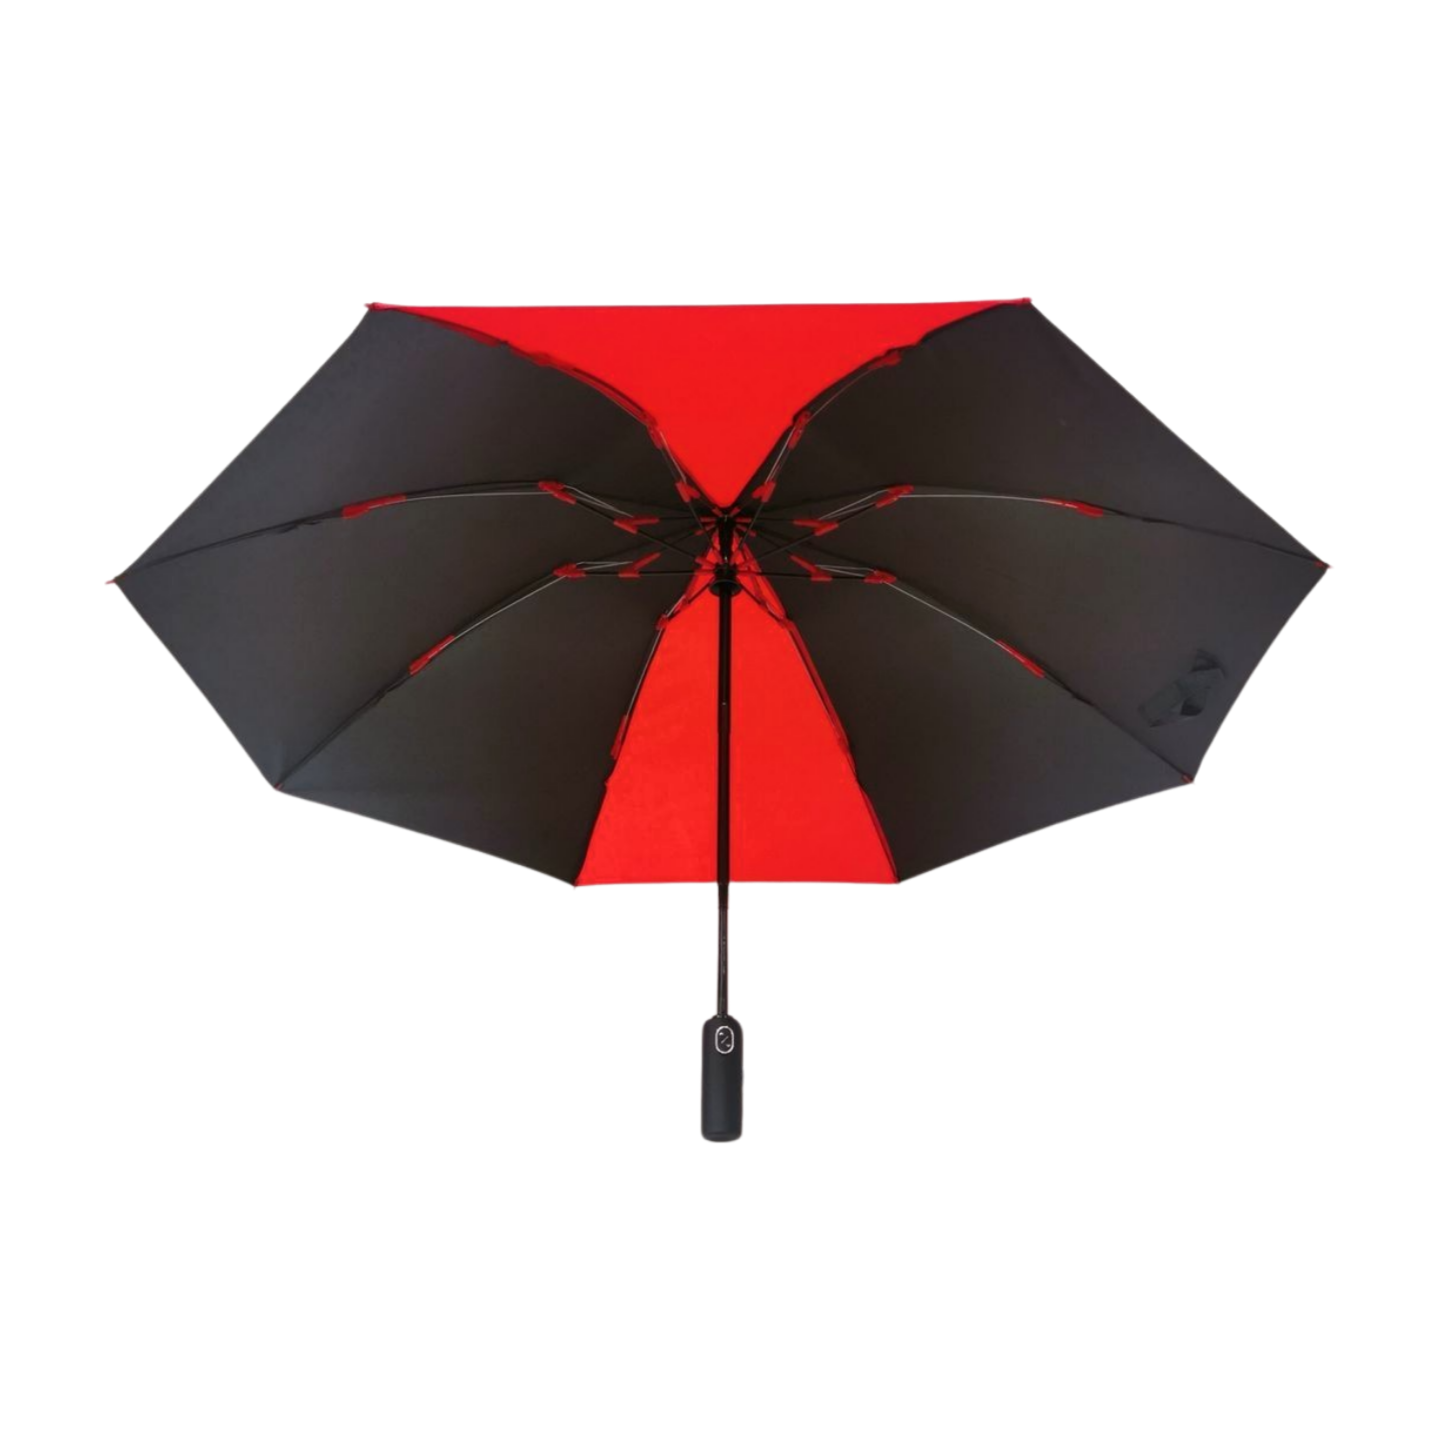 https://www.hodaumbrella.com/upgrade-fiberg…verse-umbrella-product/